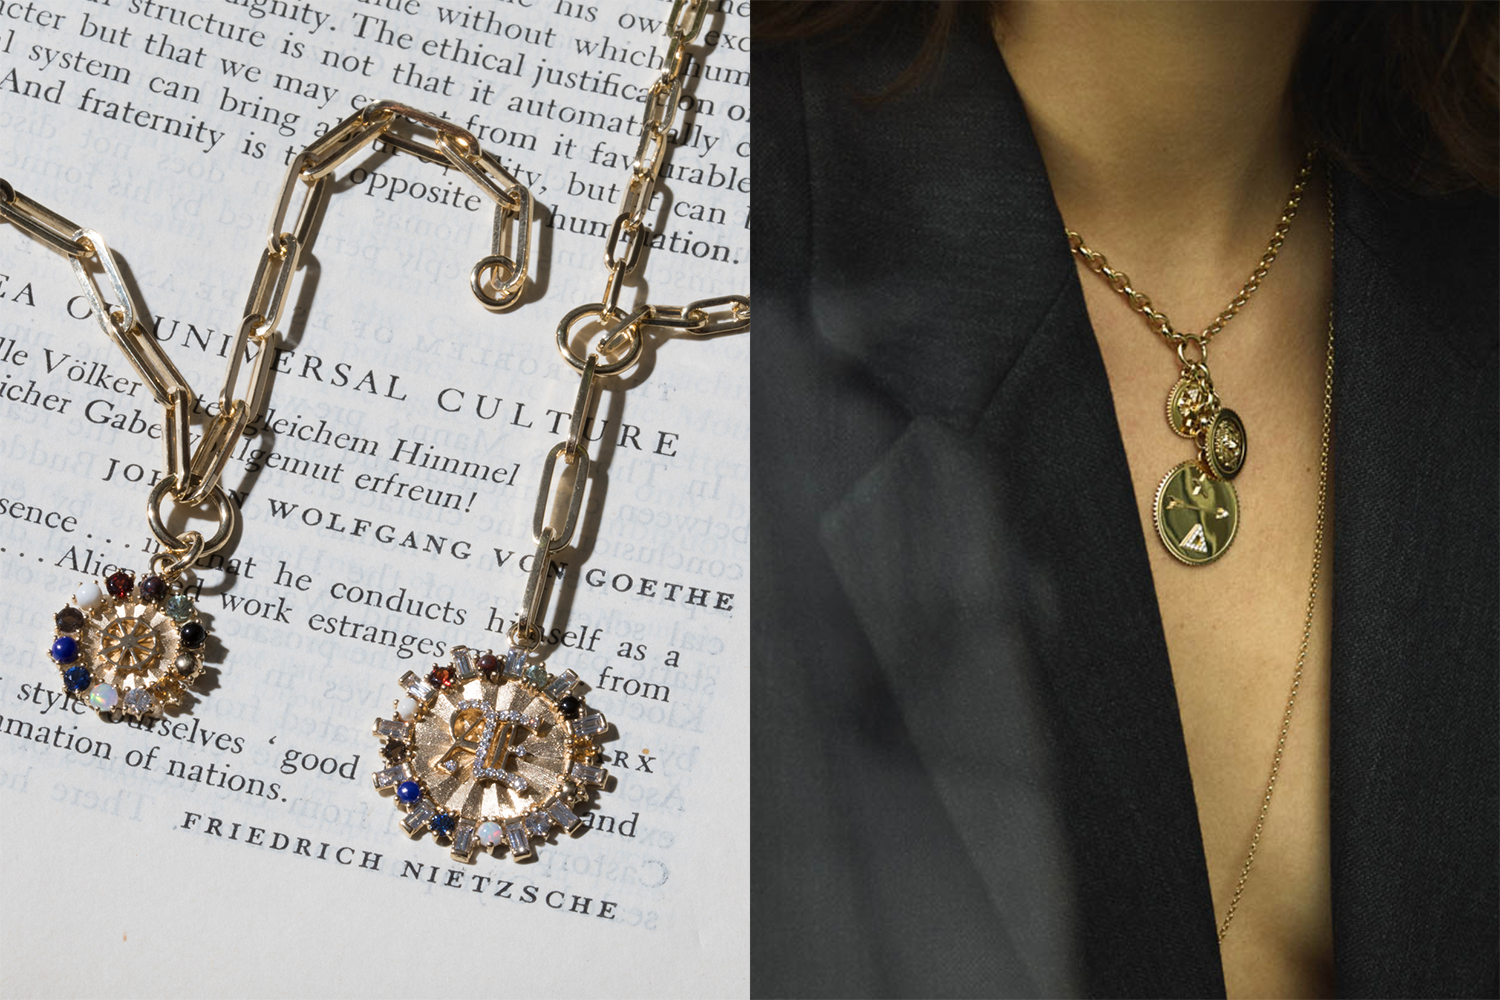 Louis Vuitton Gold and Rose Quartz Bag Charm, Contemporary Jewelry, Bracelet